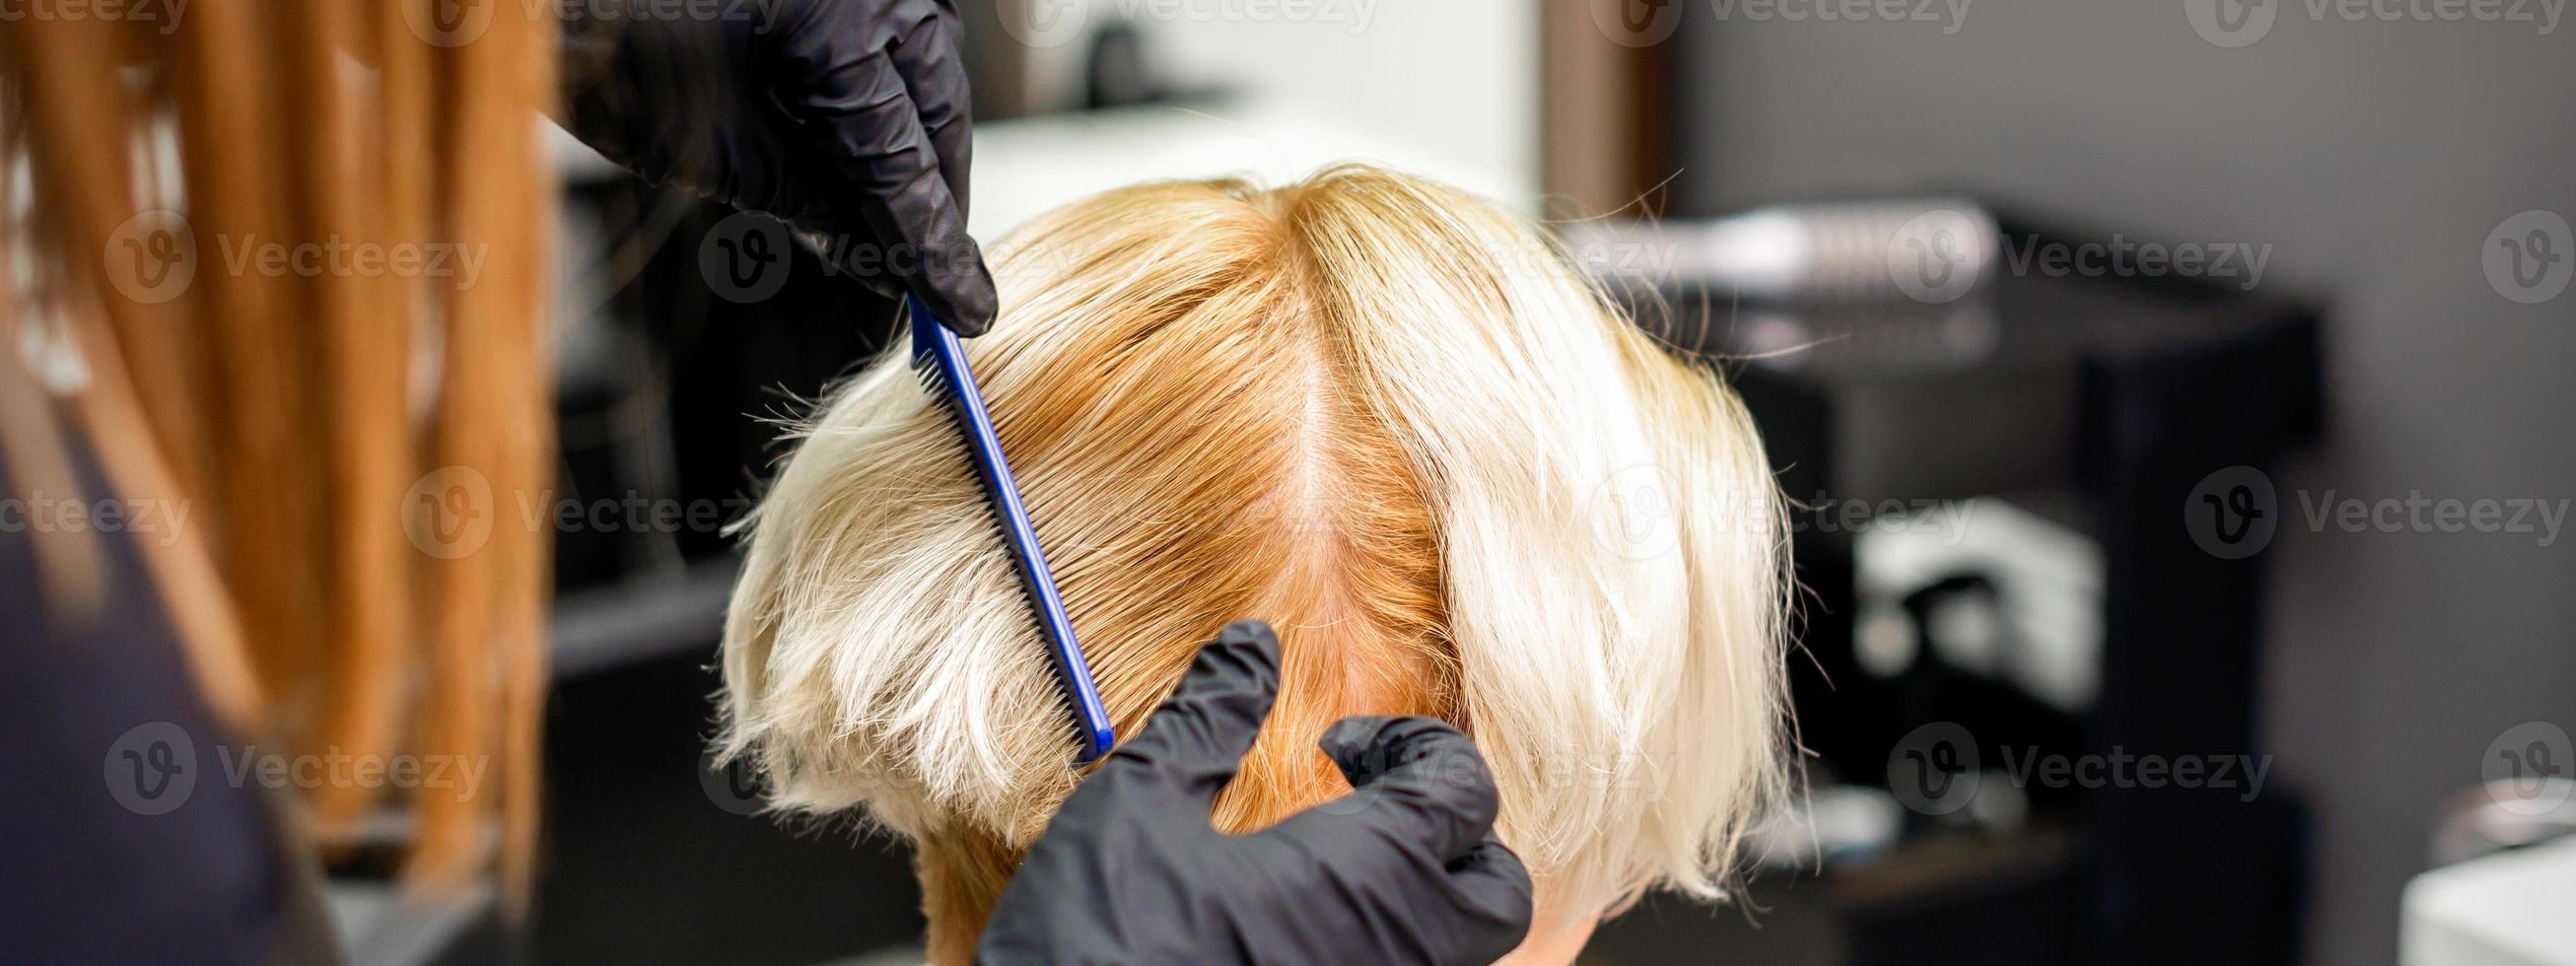 Hairdresser combing female short hair photo